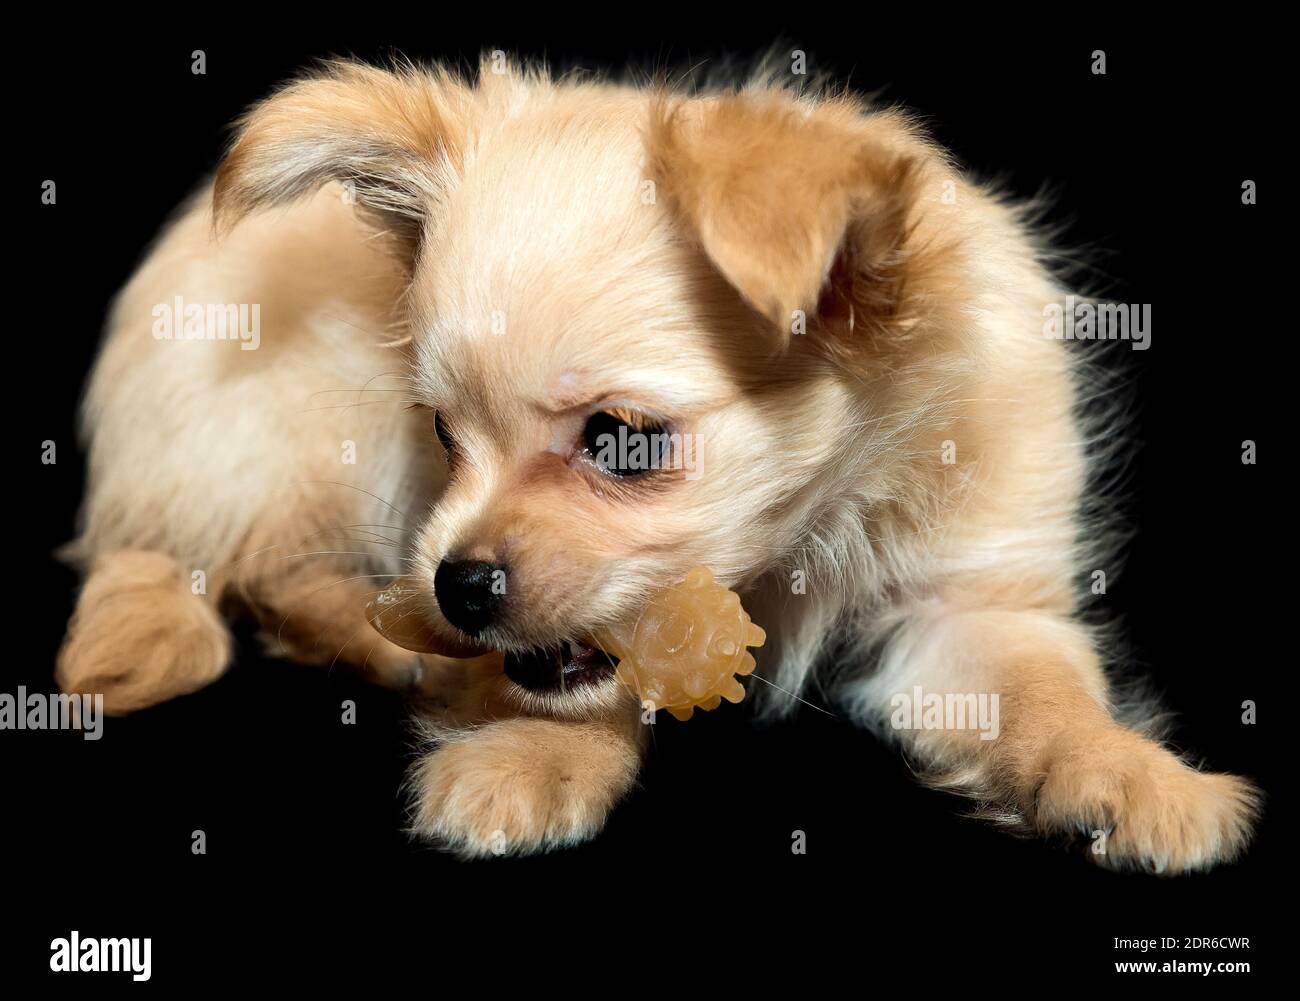 Kleiner Hund Zähne Putzspielzeug. Beigefarbener Welpe auf schwarzem Hintergrund. Stockfoto